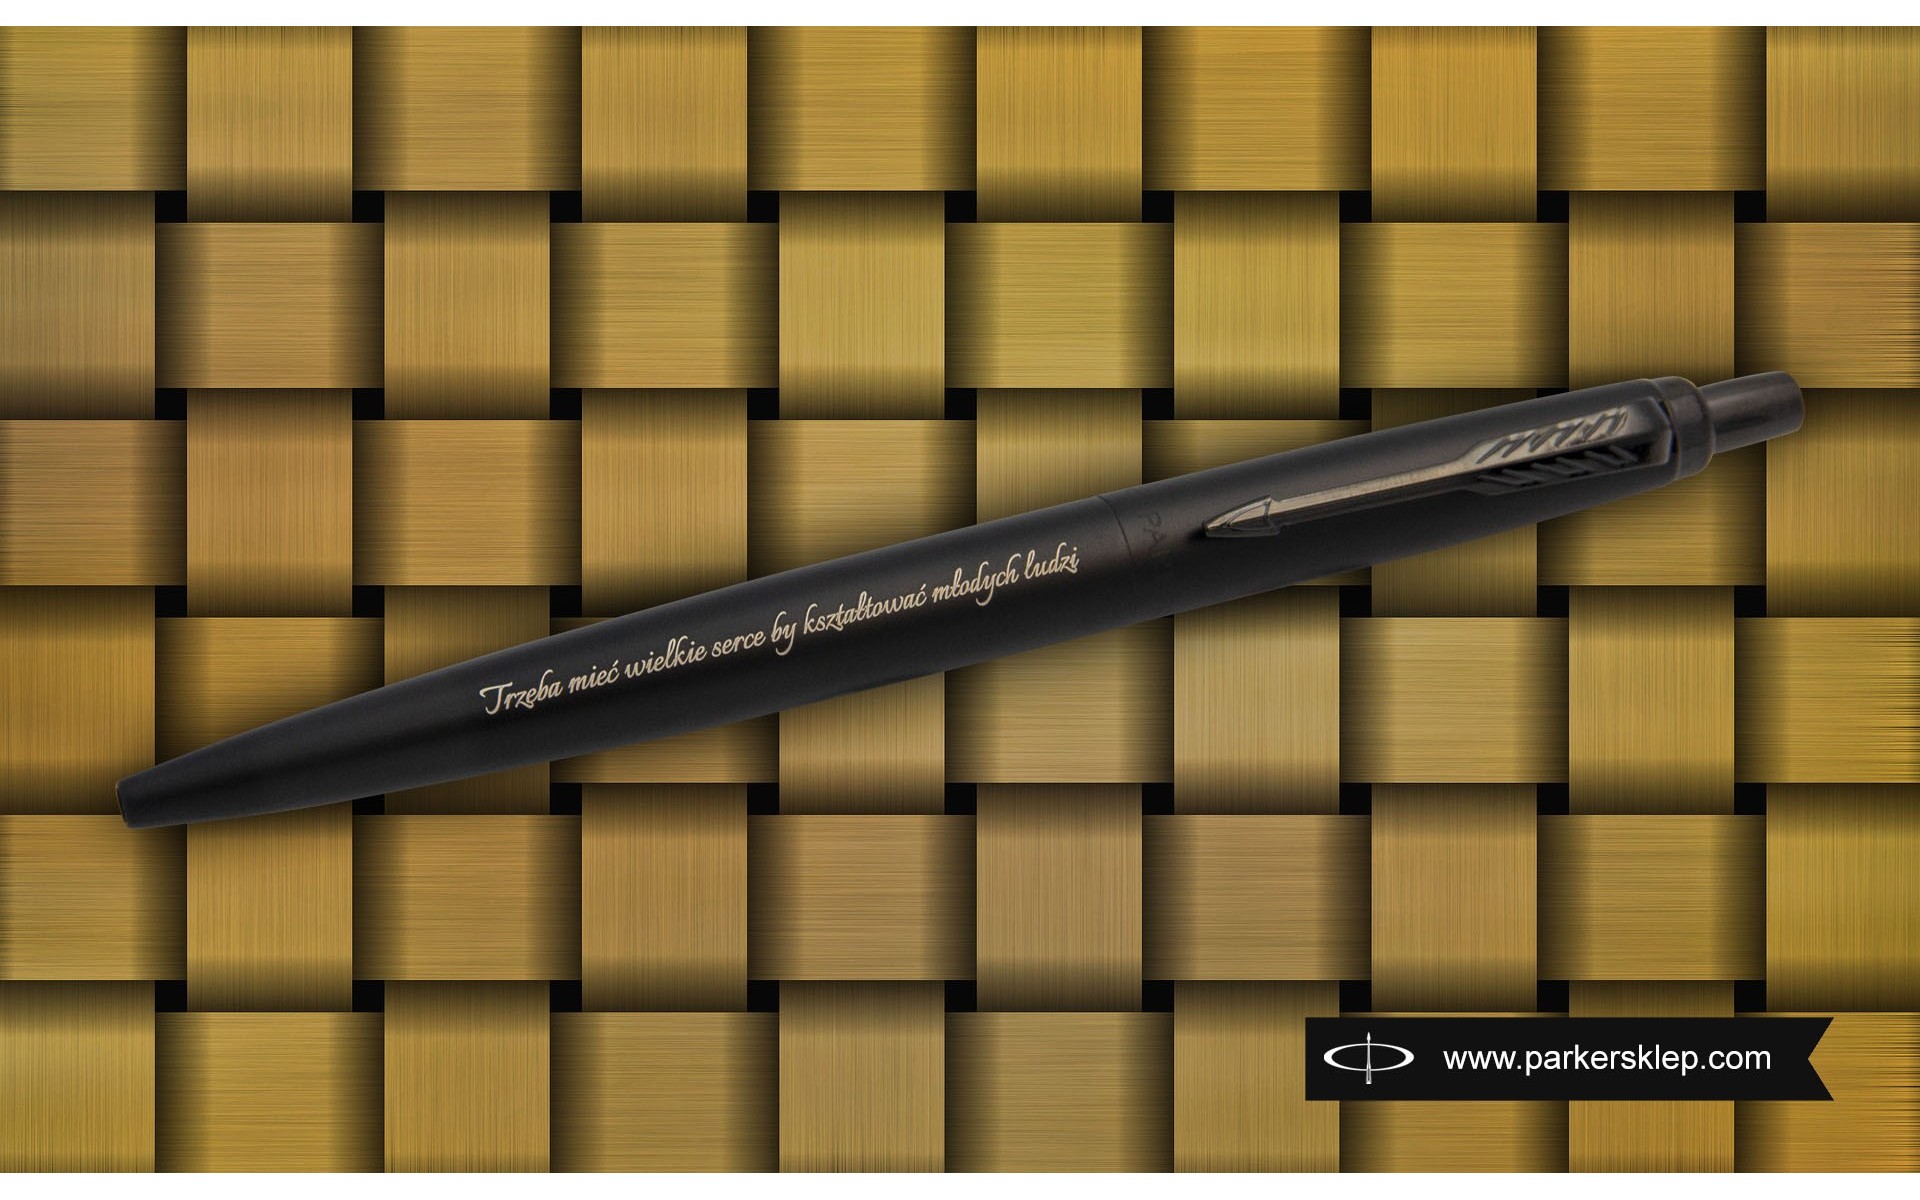 Długopis Parker Jotter XL Monochrome Black 2122753 - Trzeba mieć wielkie serce by kształtować młodych ludzi